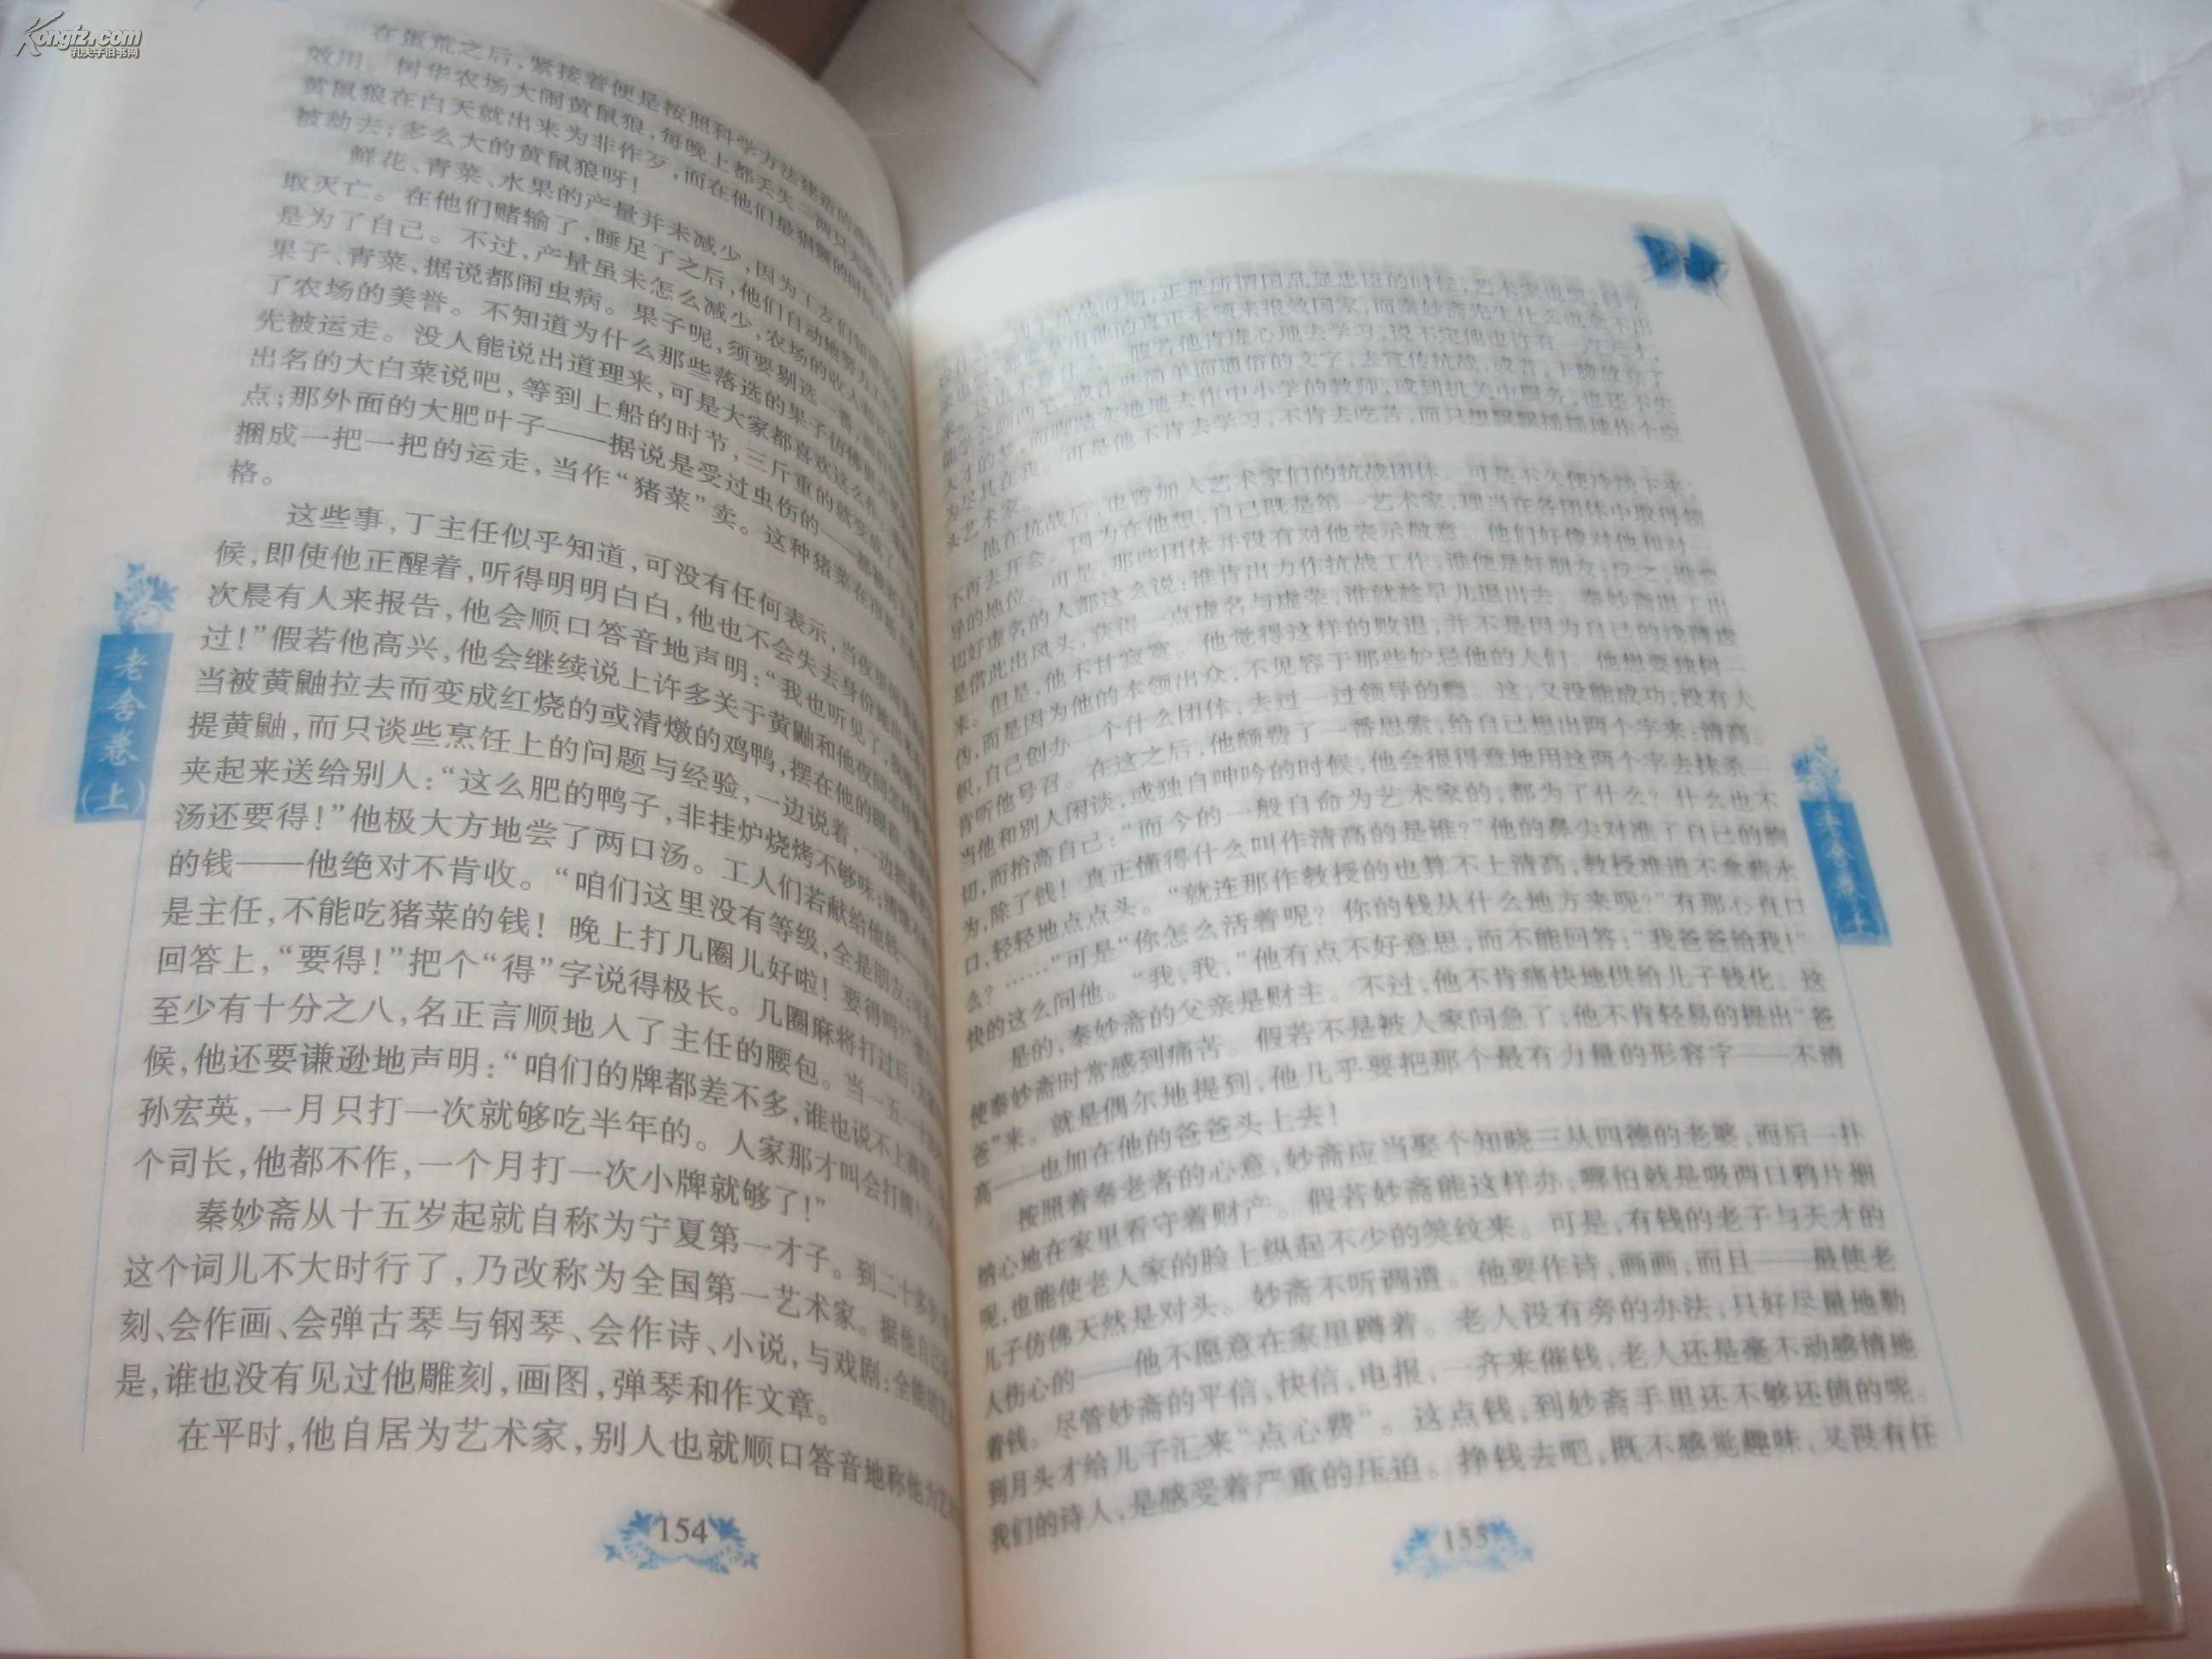 【图】中国现代文学珍藏大系 【老舍卷】 上 下